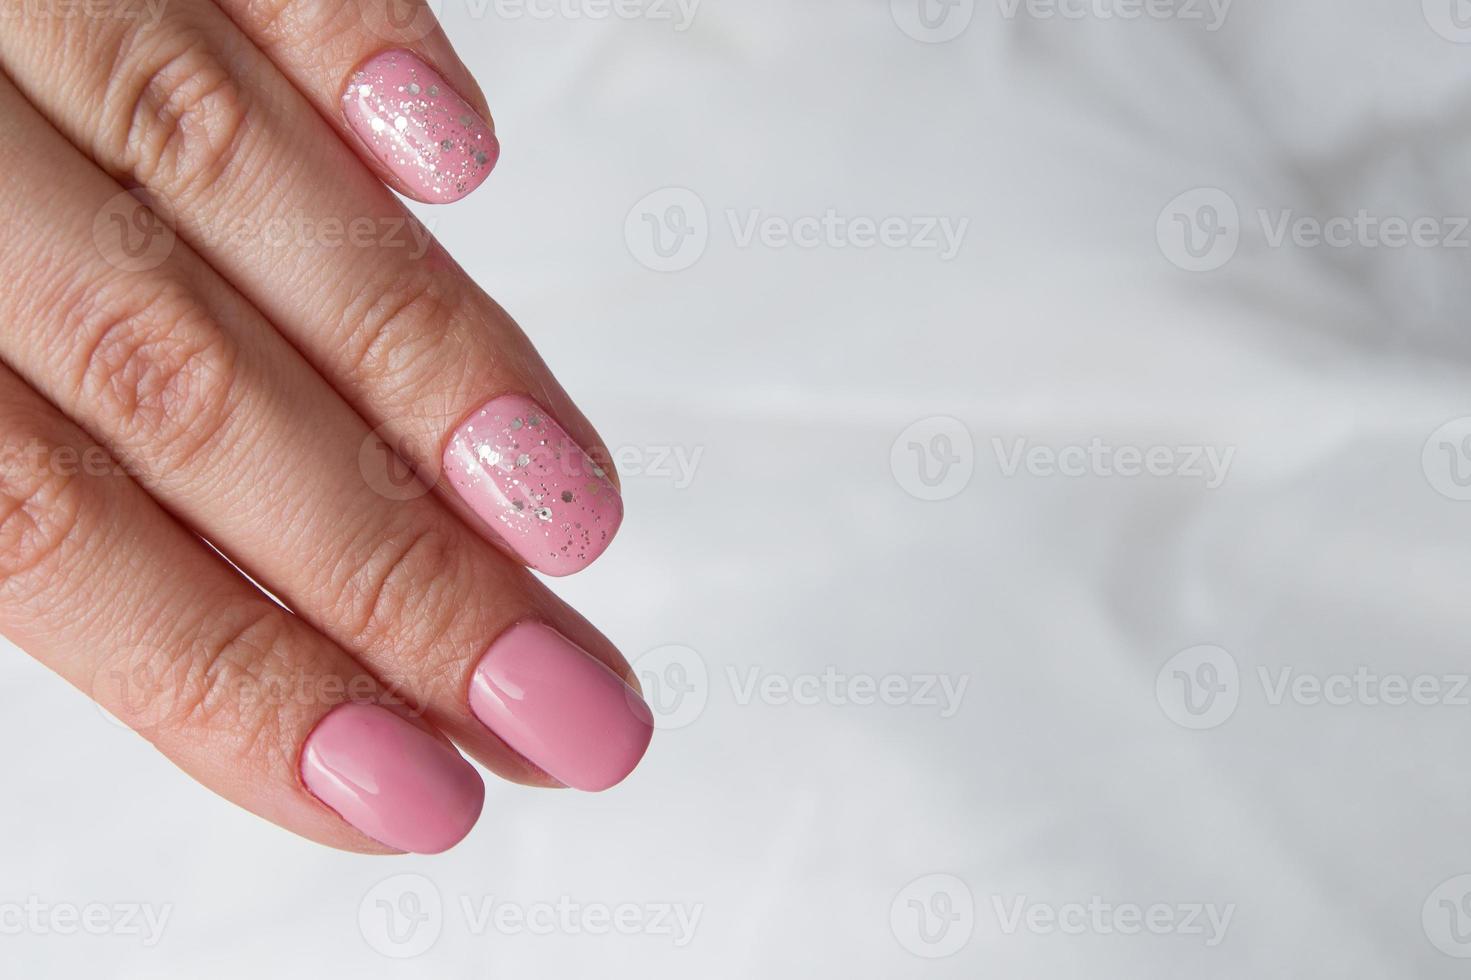 lindo verniz rosa suave e brilhos nas unhas - manicure de revestimento de salão de verniz gel foto